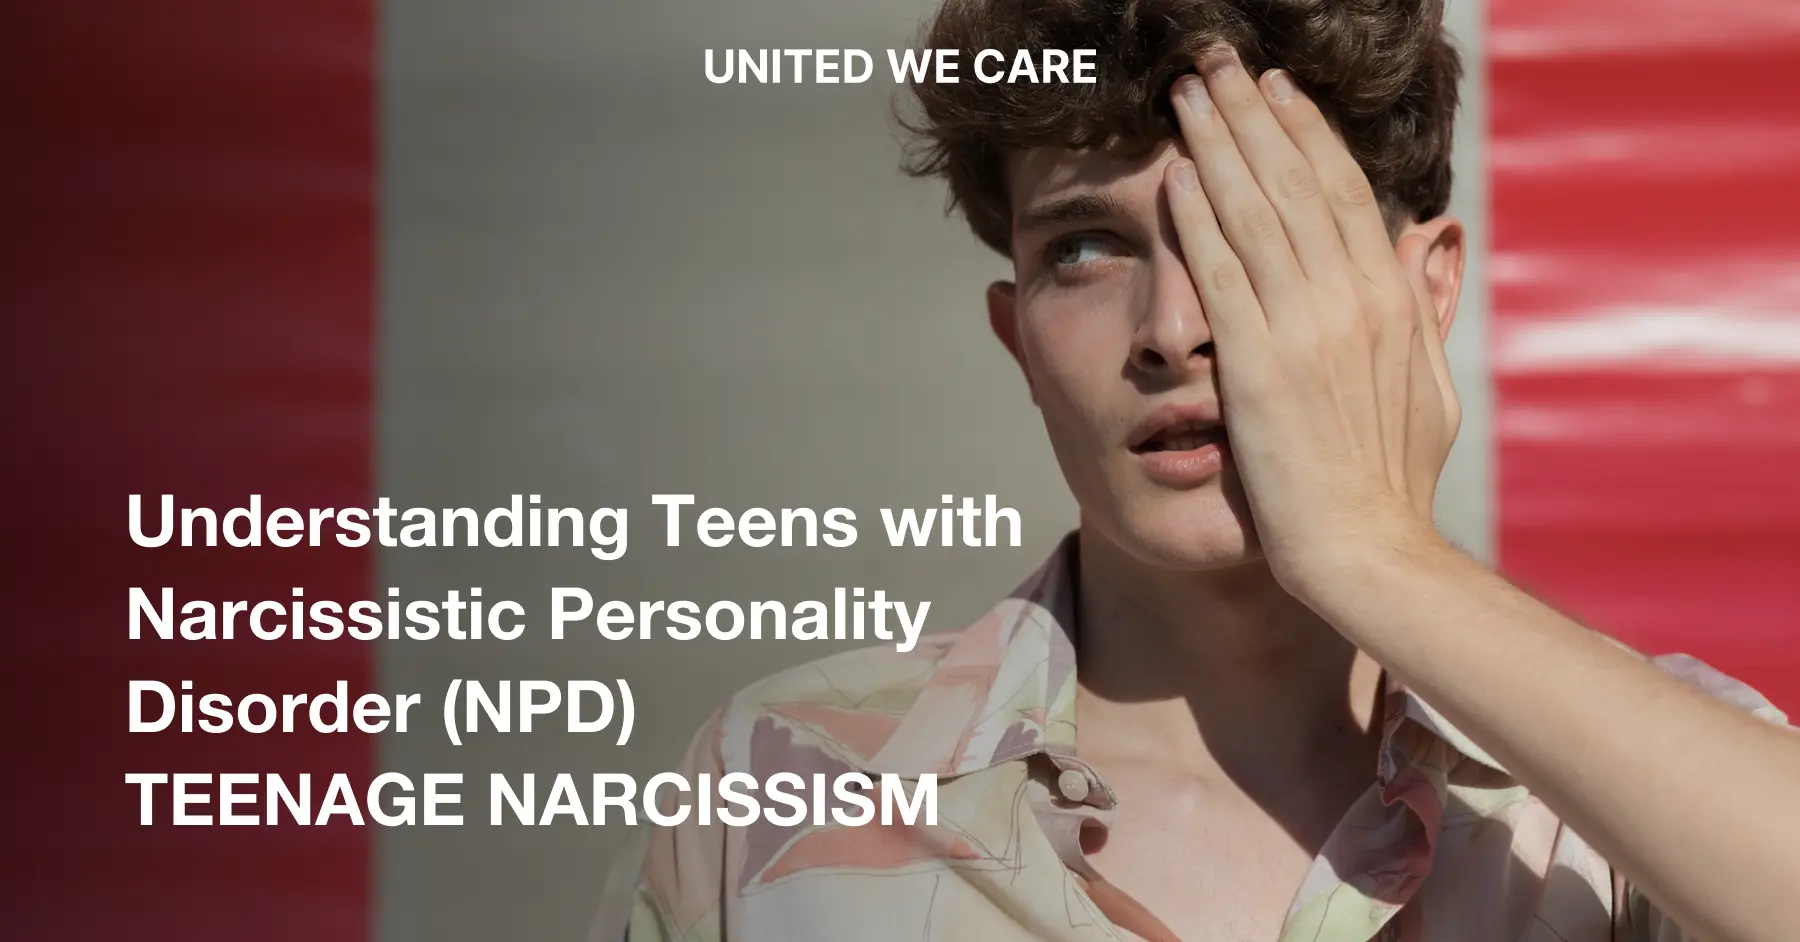 Adolescente com Transtorno de Personalidade Narcisista: 6 maneiras de entender